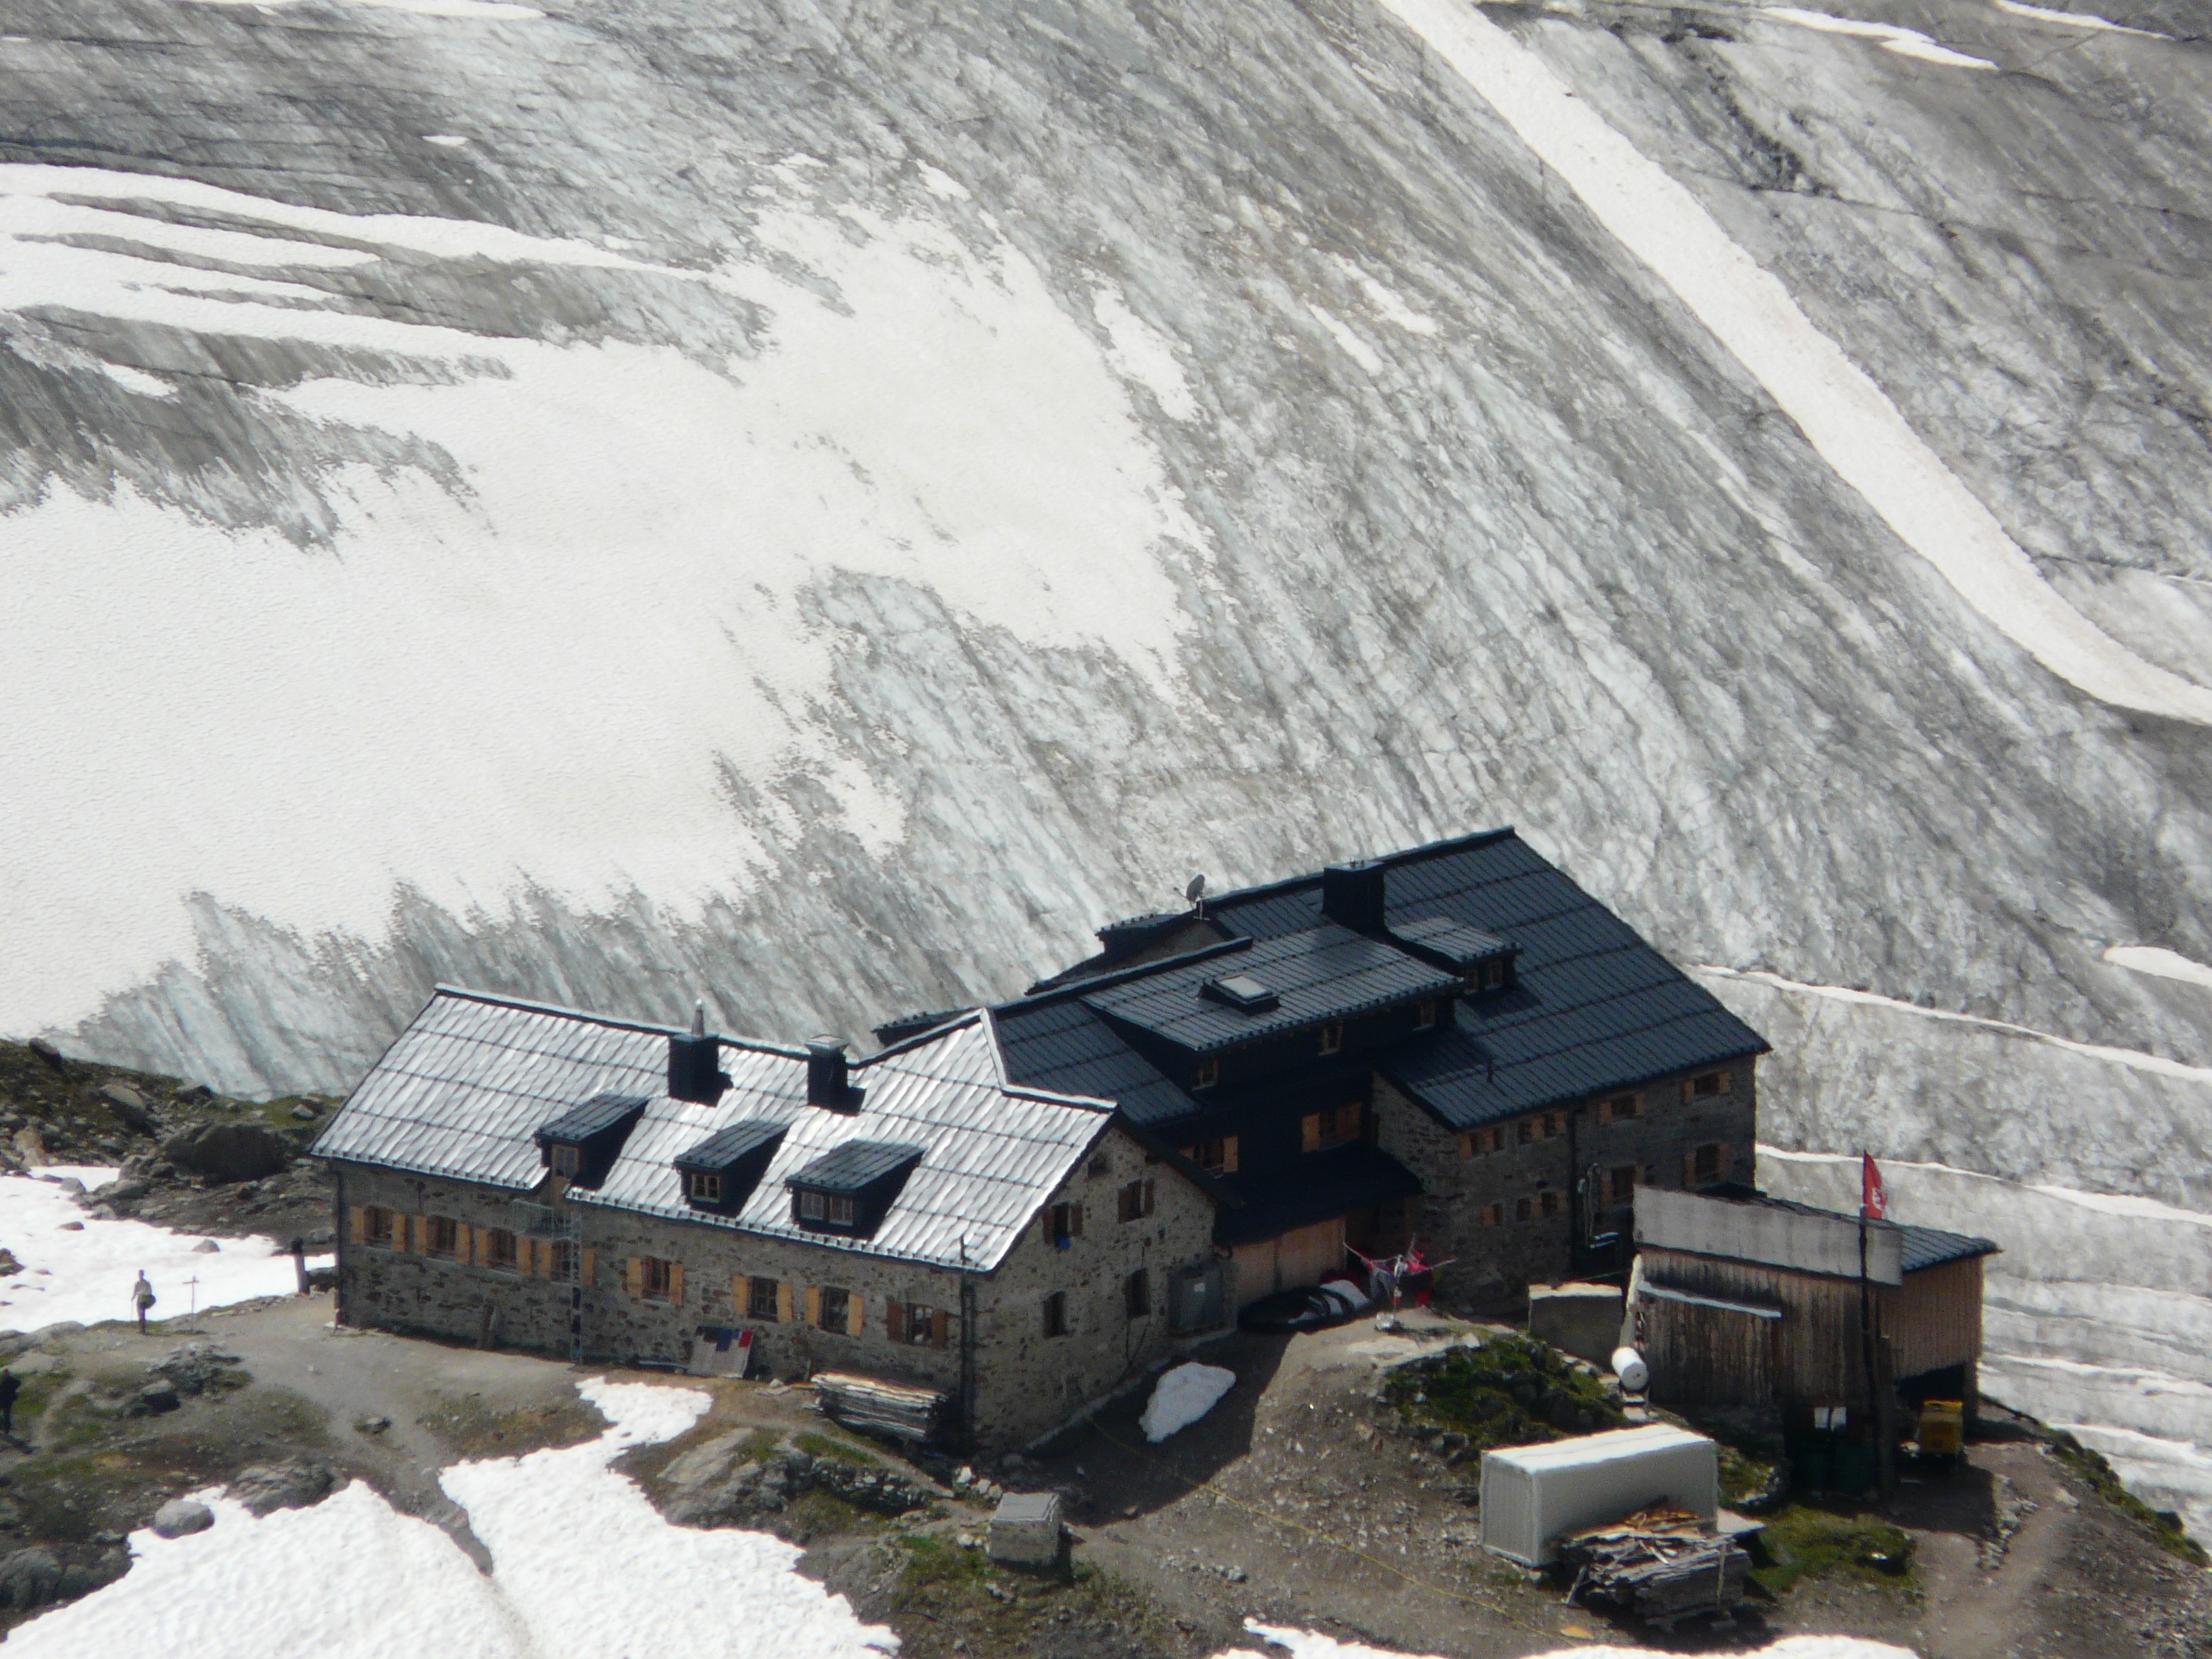 Braunschweiger Hütte and Mittelbergferner Glacier